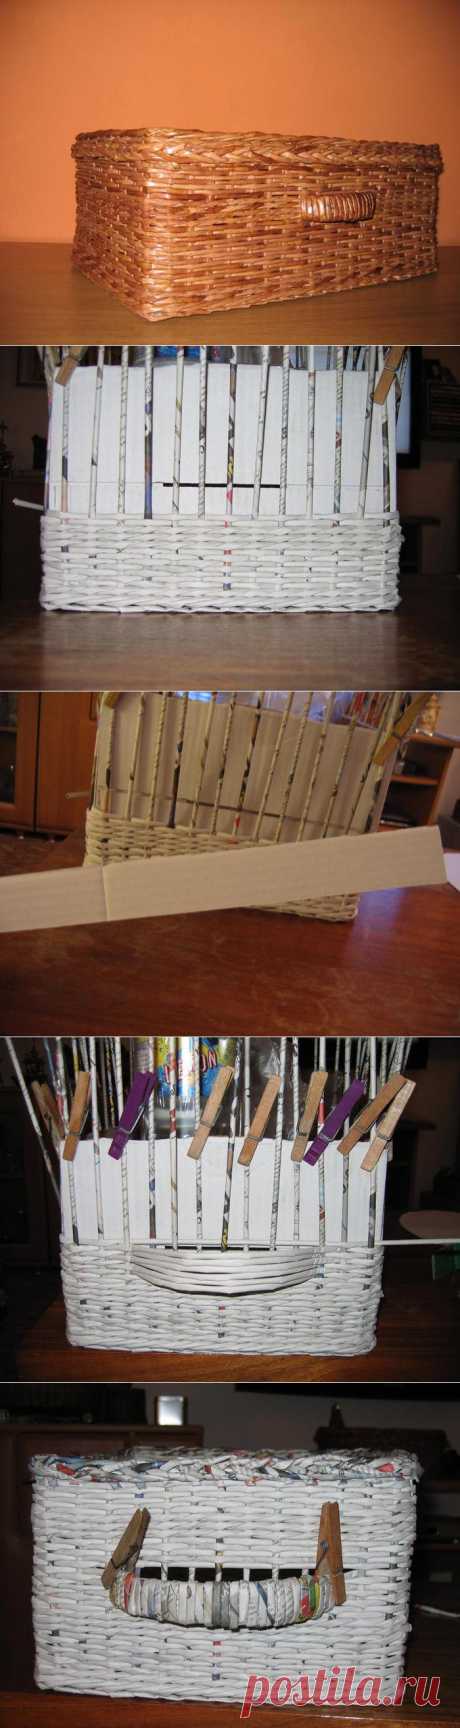 Способ плетения ручек для корзины.